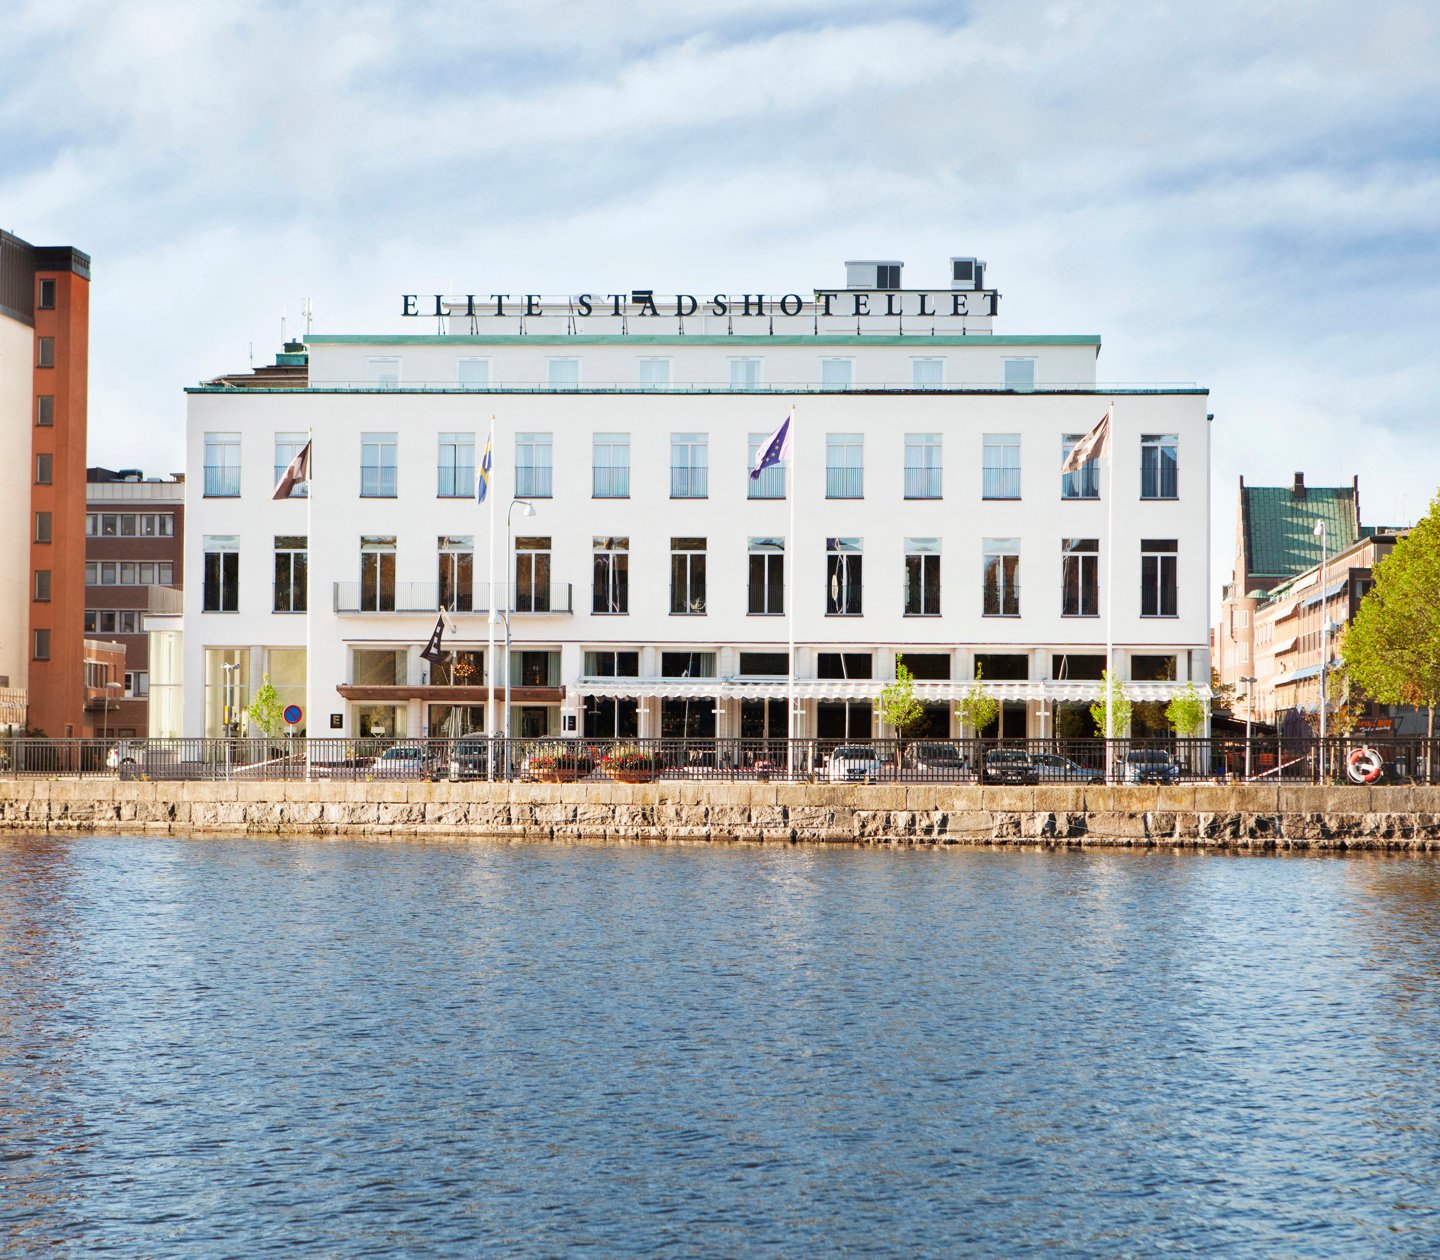 The facade of Elite Stadshotellet in Eskilstuna